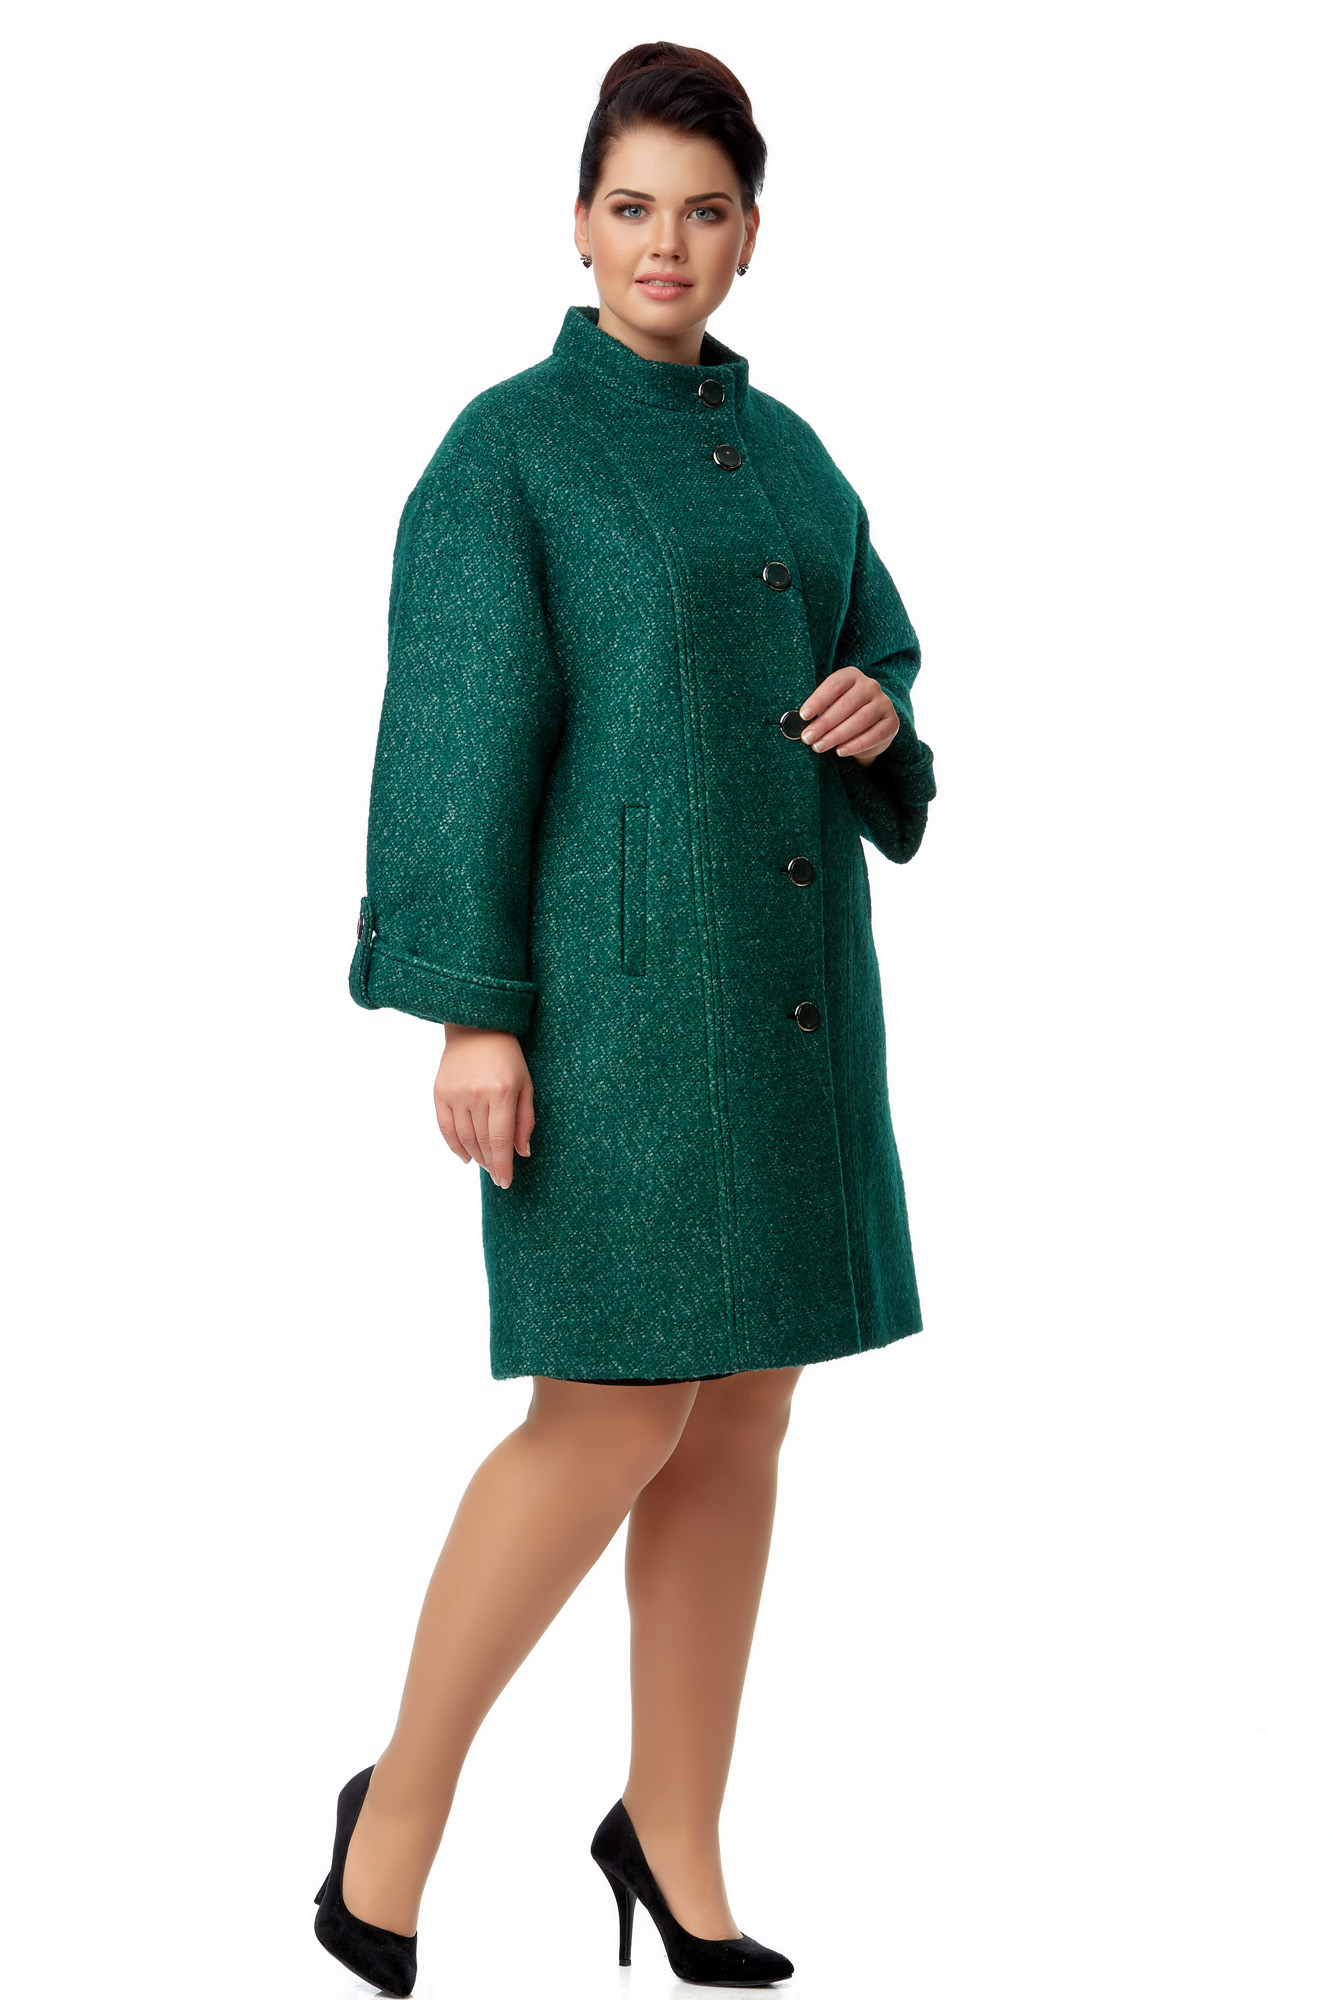 Женское пальто из текстиля с воротником 8000931-2